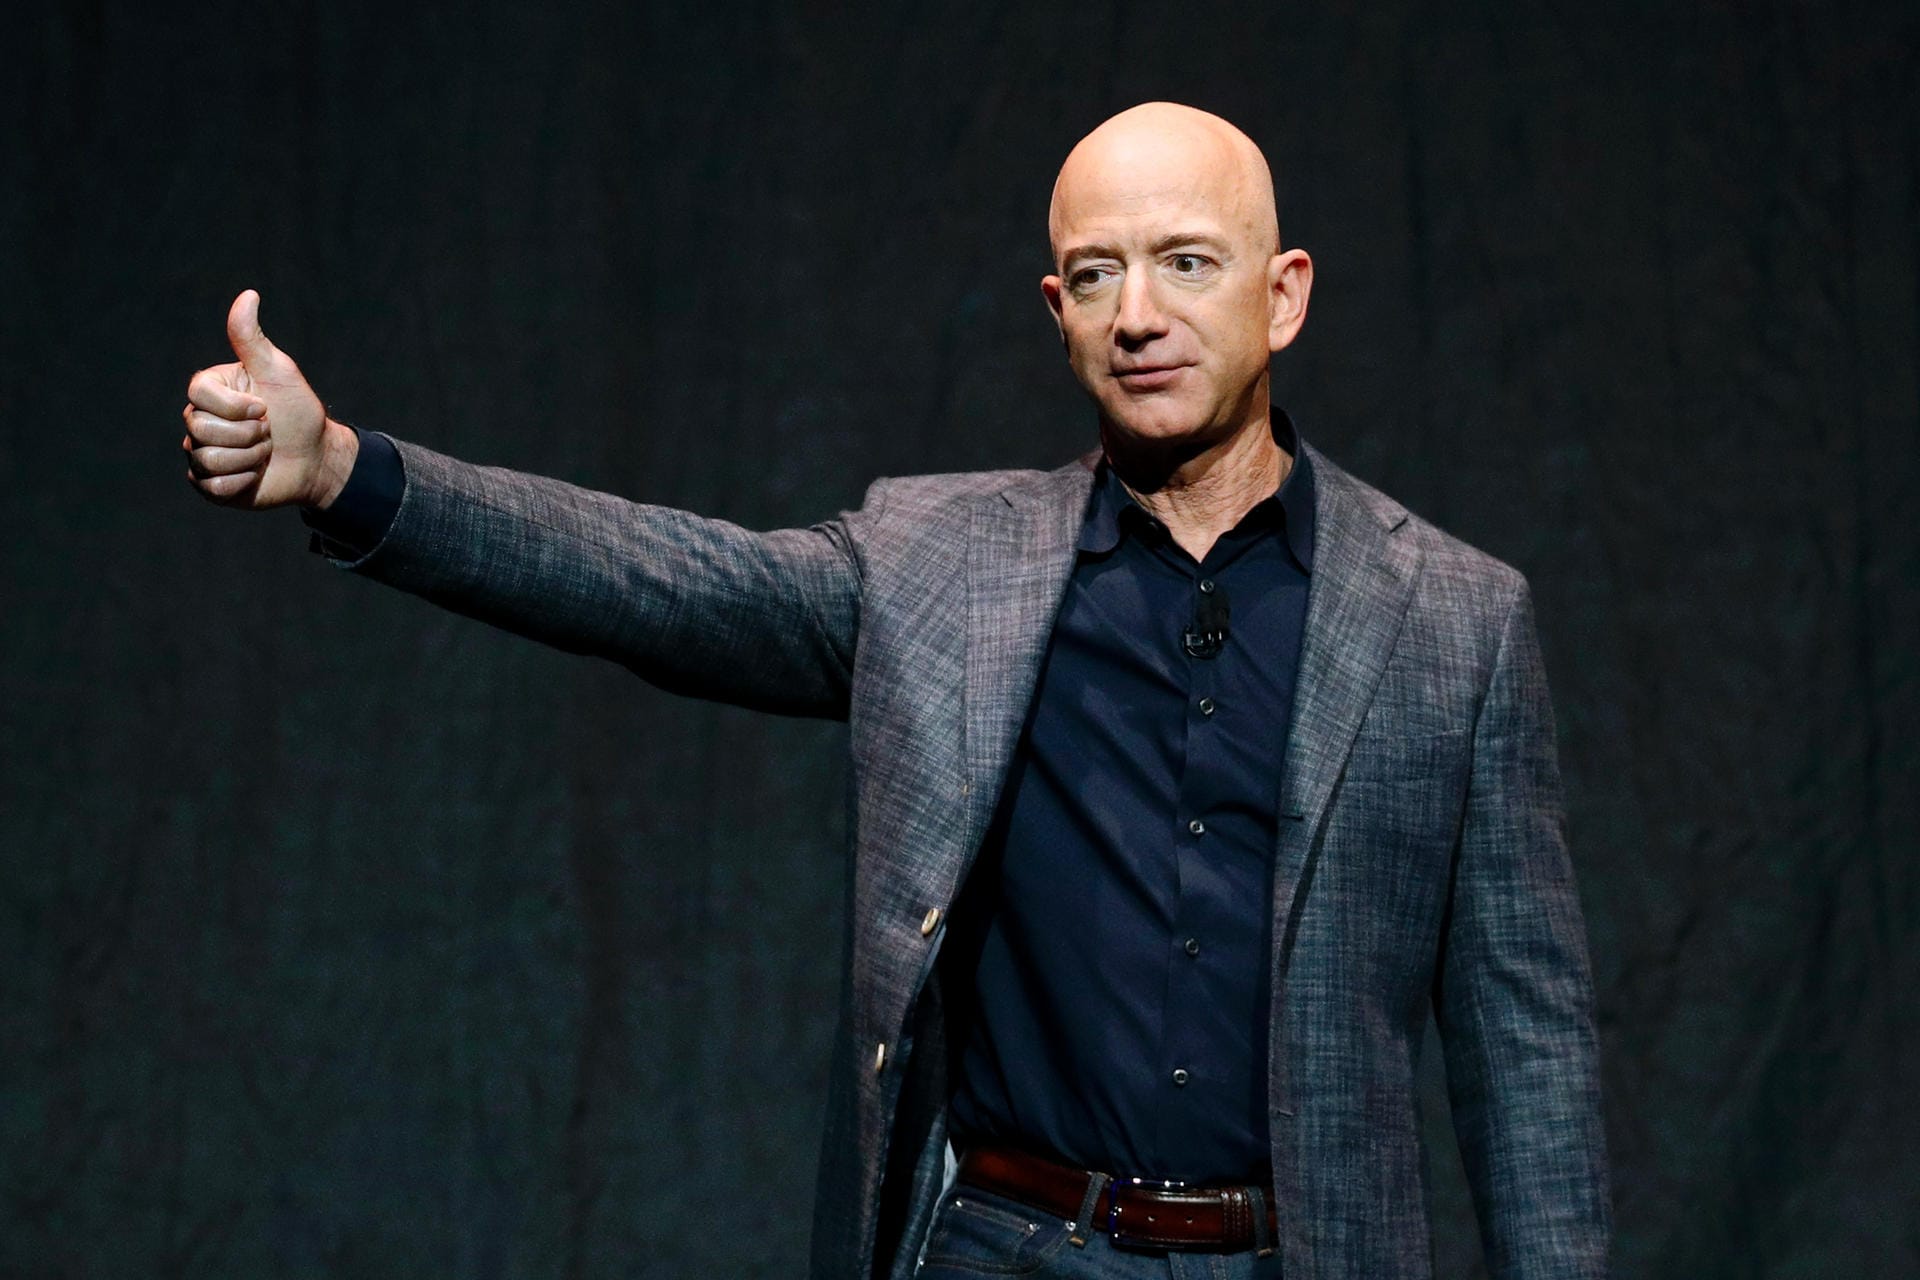 Auf den zweiten Platz kommt Jeff Bezos. Er hat den Online-Versandhändler Amazon gegründet und war bis Juli 2021 auch der Chef des Konzerns. Laut "Forbes" besitzt Bezos ein Vermögen von rund 171 Milliarden US-Dollar.